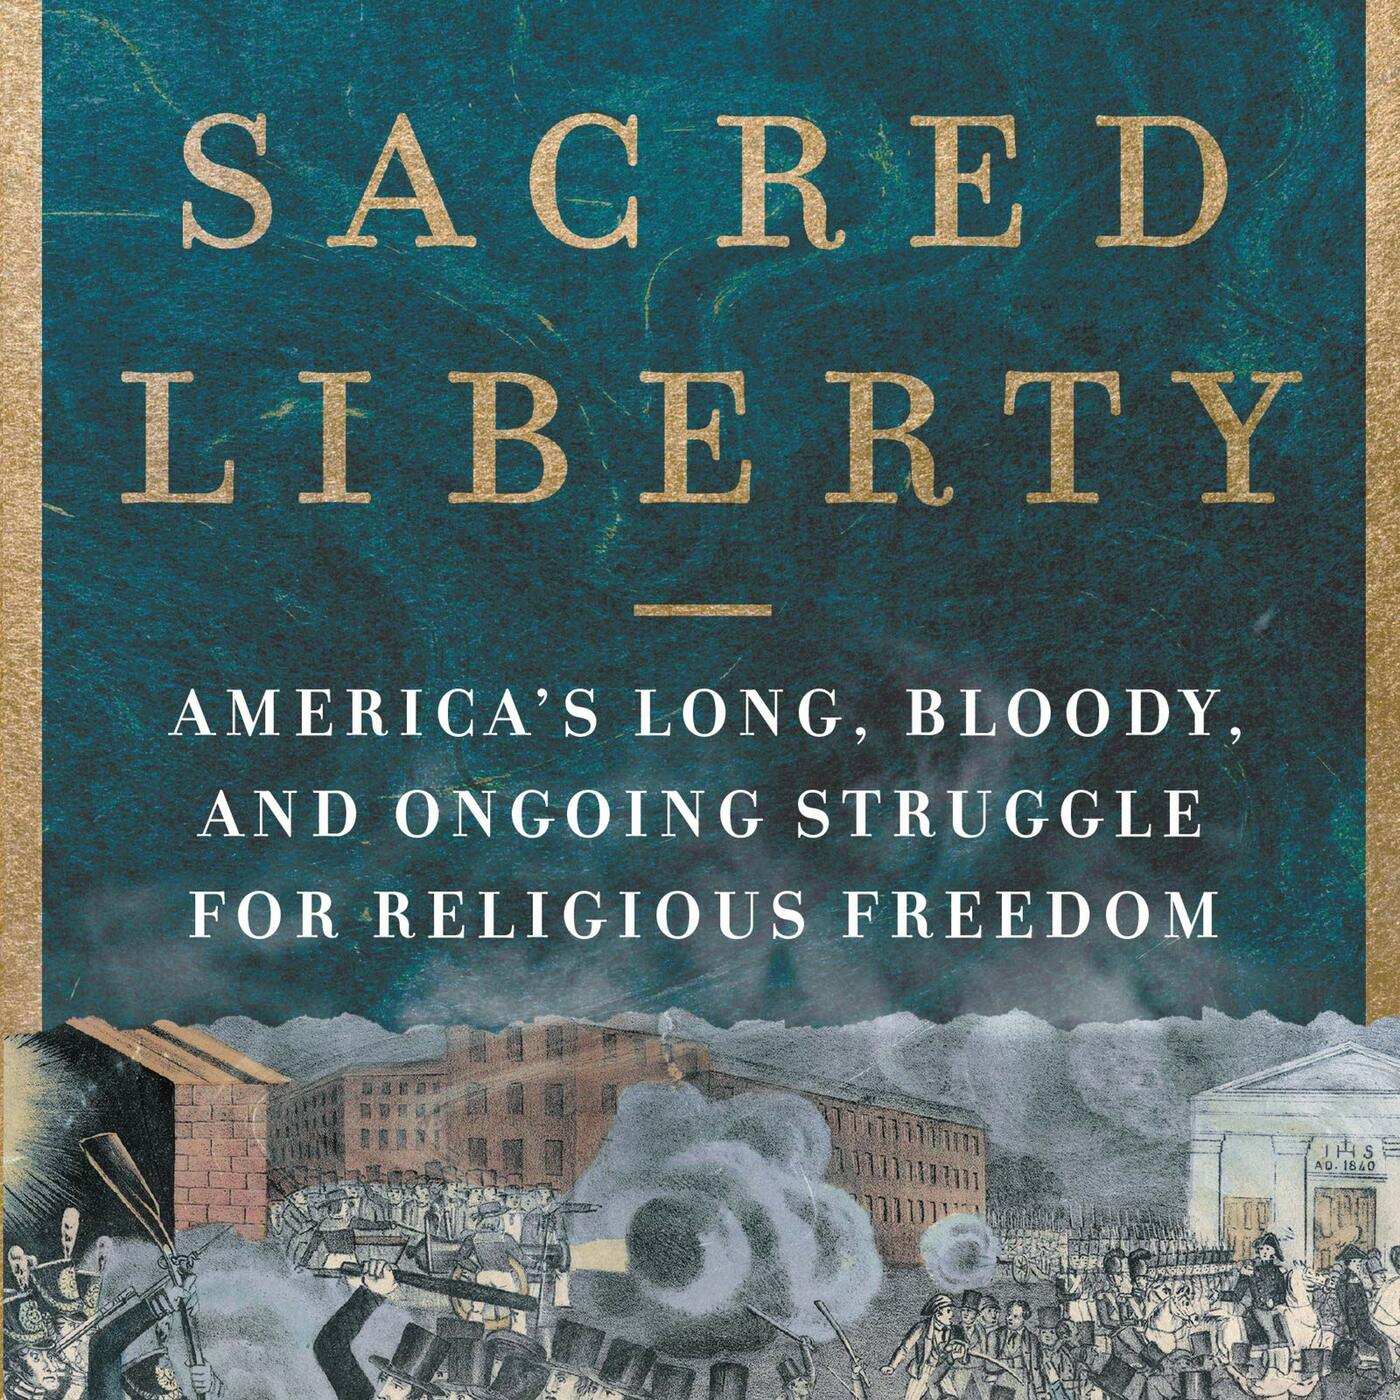 Sacred Liberty